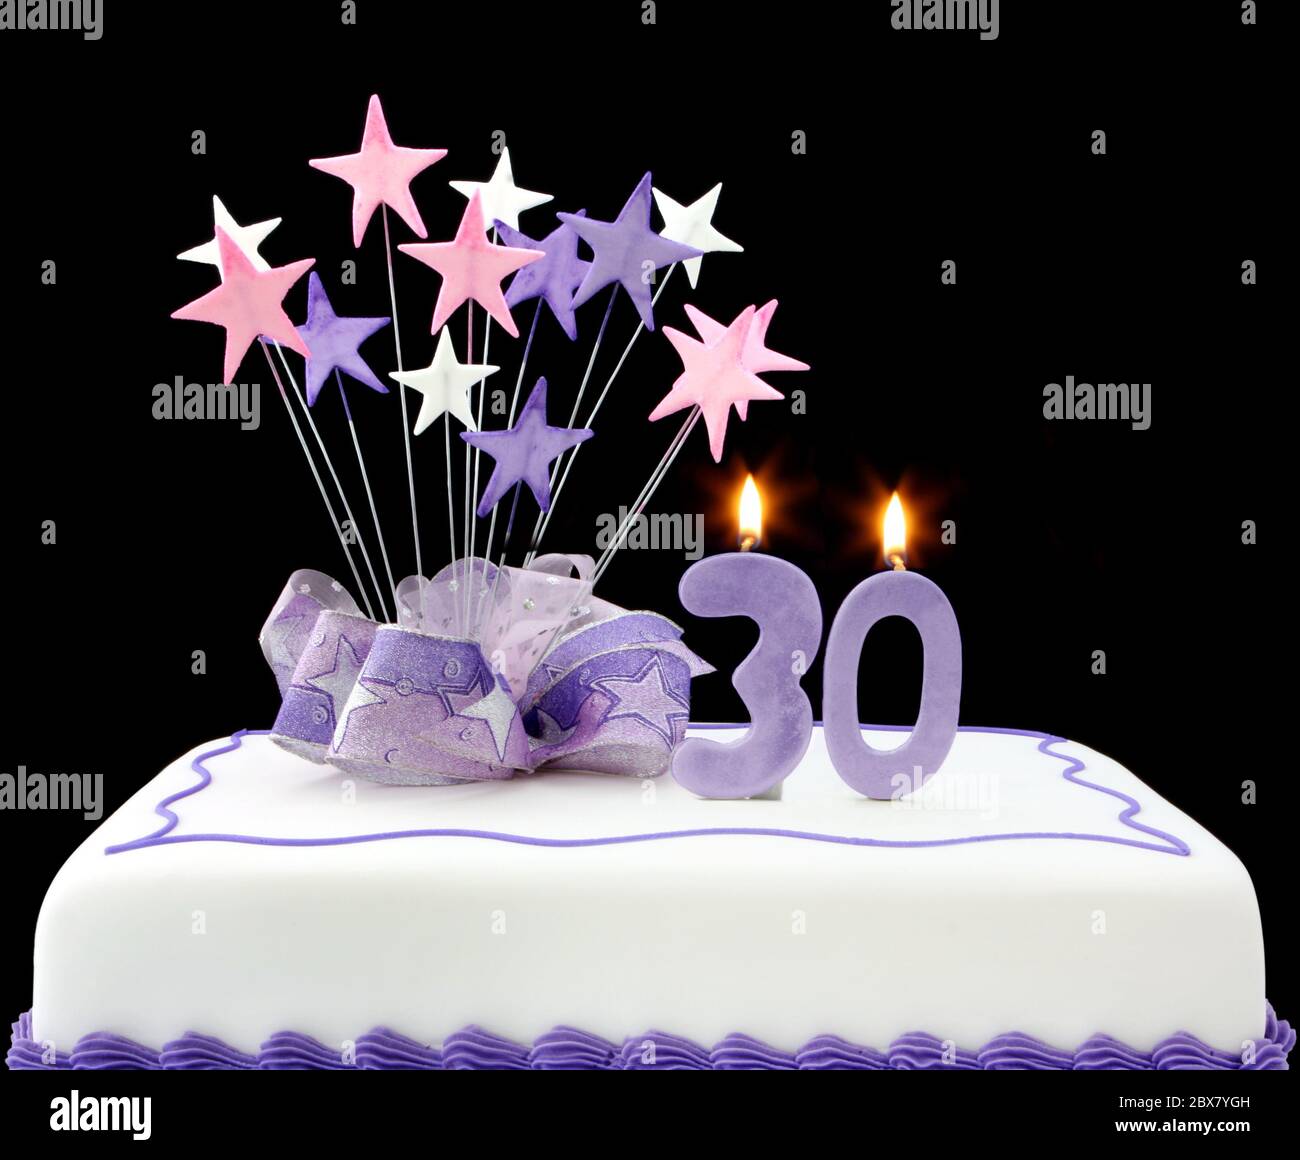 Gâteau de fantaisie avec le numéro 30 bougies. Décoration avec rubans et  étoiles, tons pastel sur fond noir Photo Stock - Alamy